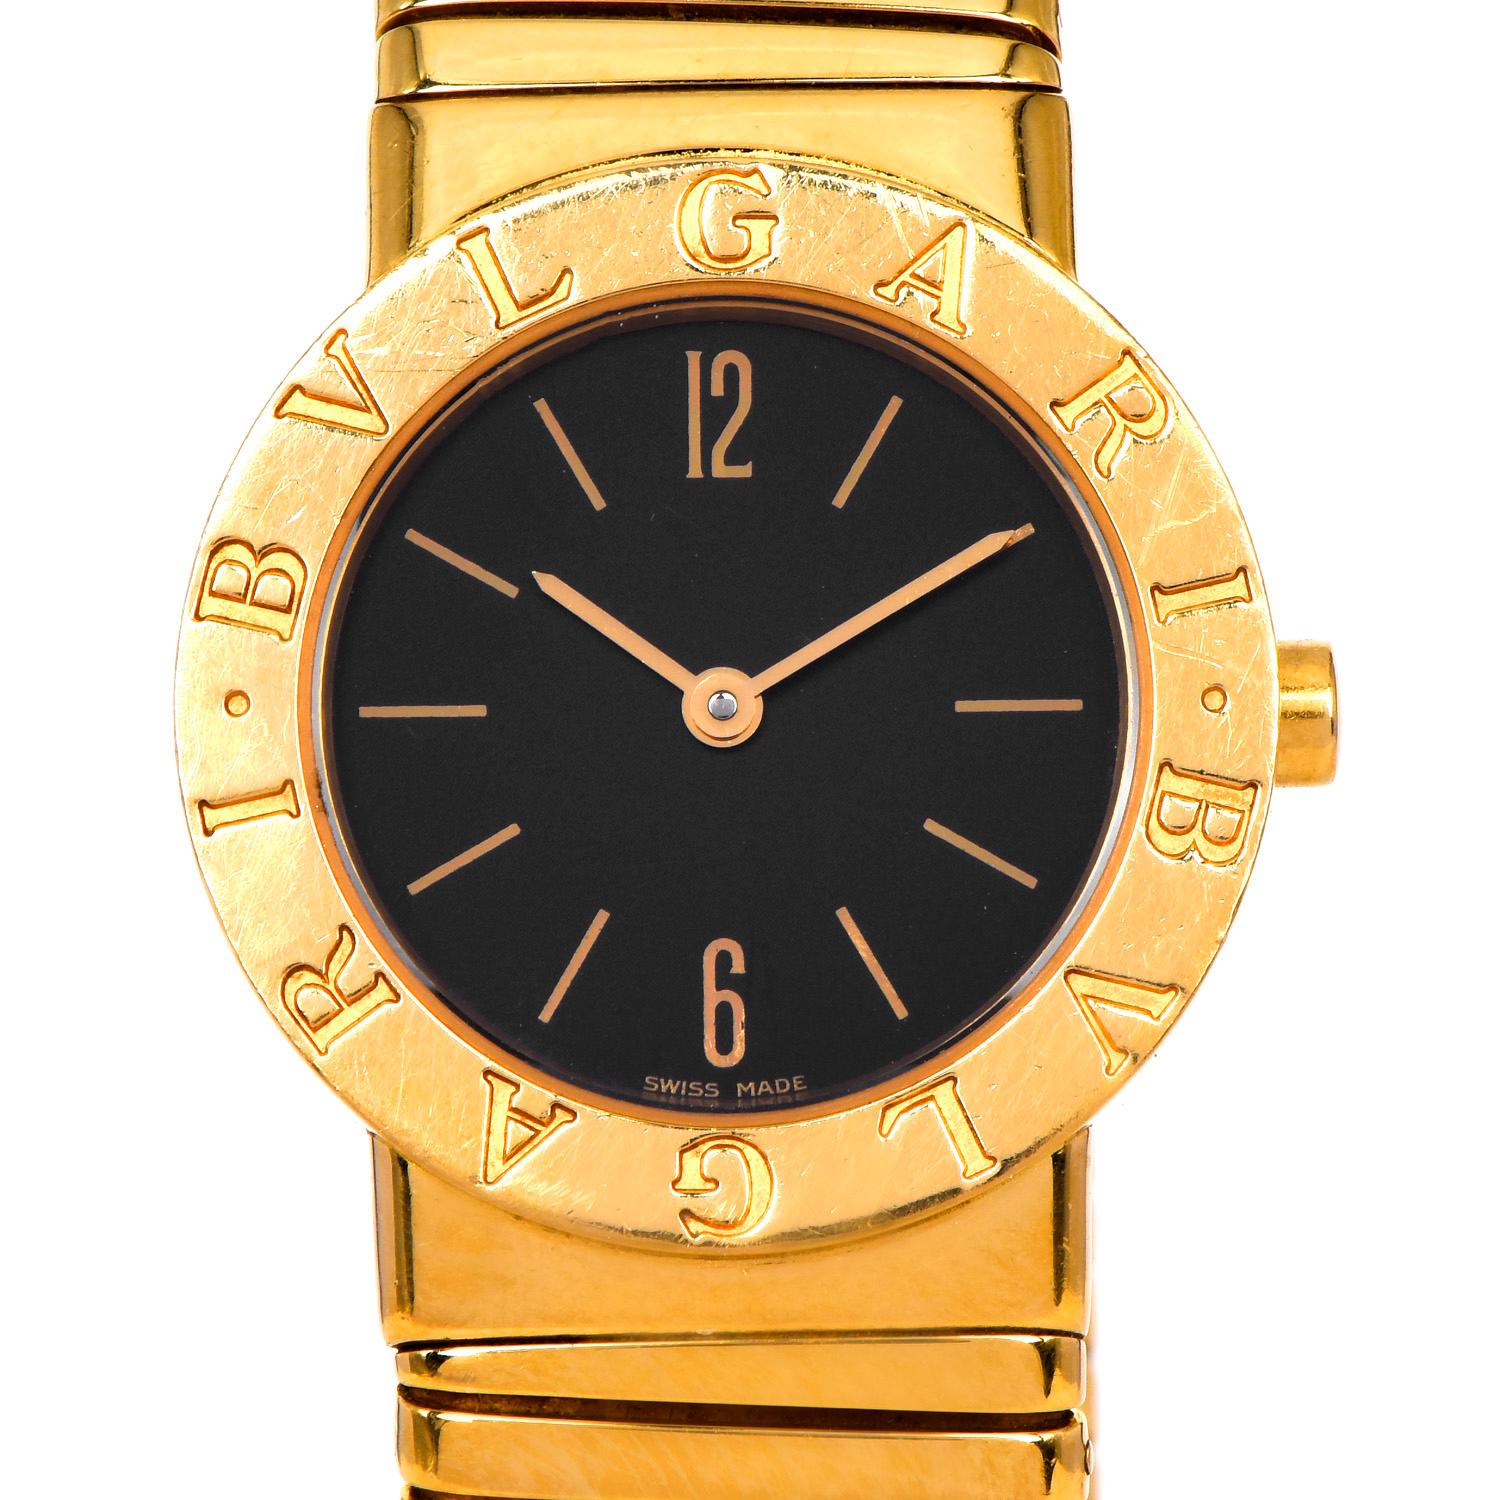 Diese mittelgroße Damen Bvlgari Bulgari Tubogas Uhr in 18k Gelbgold, ein zeitloses begehrtes Meisterwerk, perfekt für den täglichen Gebrauch.

Sie hat ein wunderschönes schwarzes Zifferblatt mit goldenen Ziffernmarkierungen. Uhr, Zifferblatt,